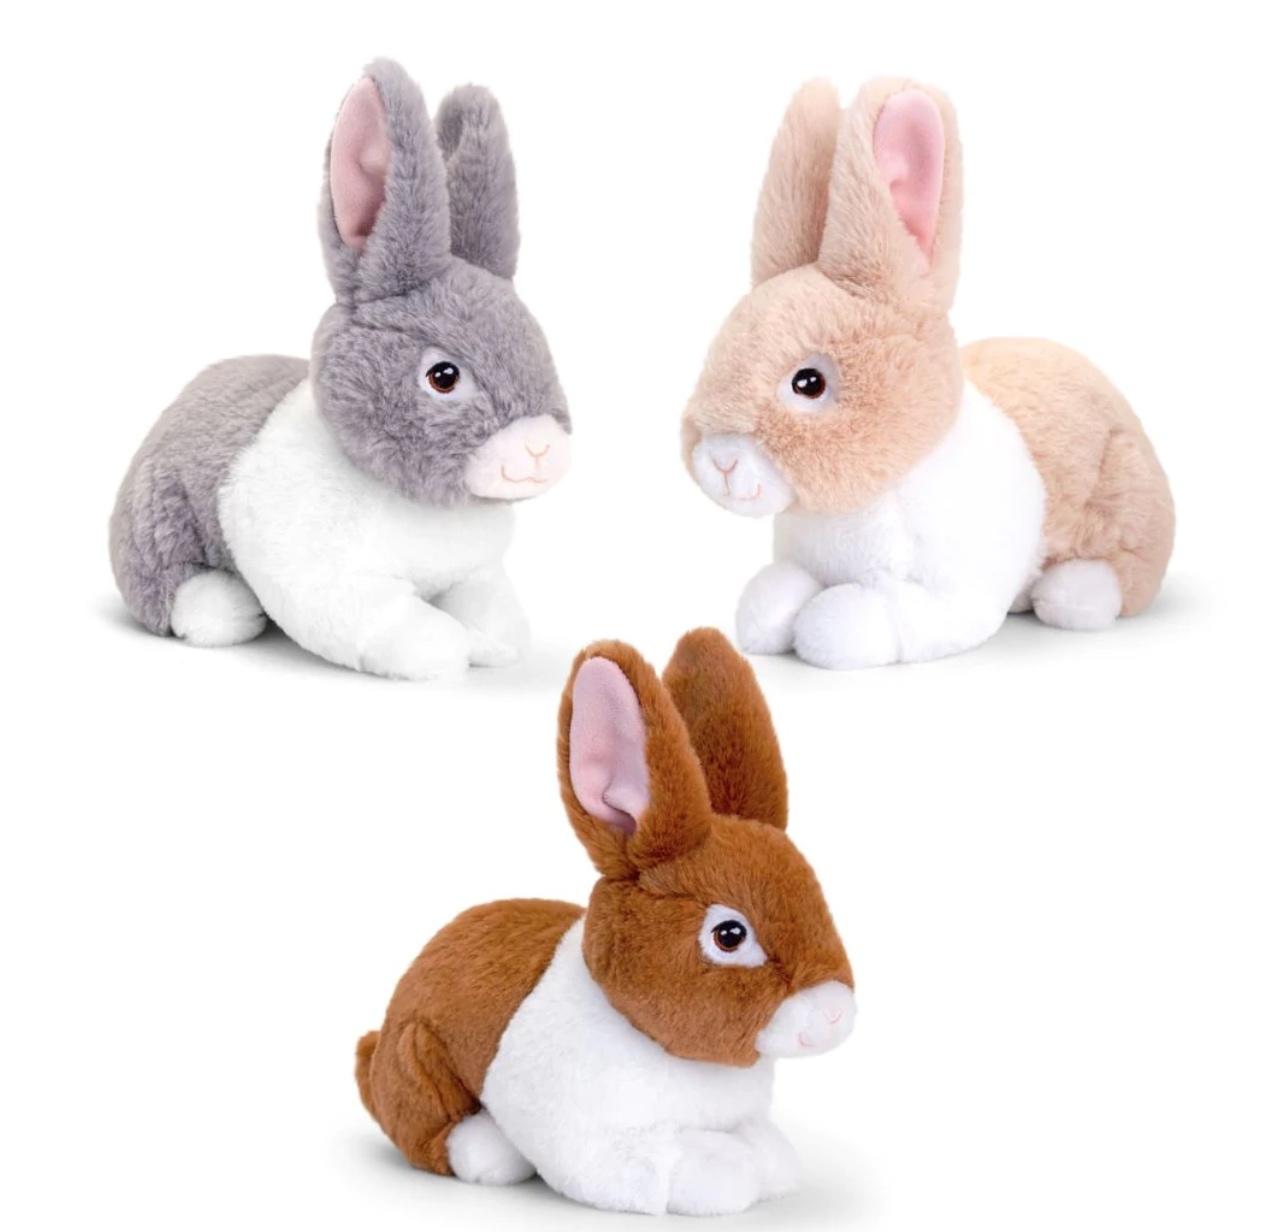 Three plush, cuddly bunny toys.